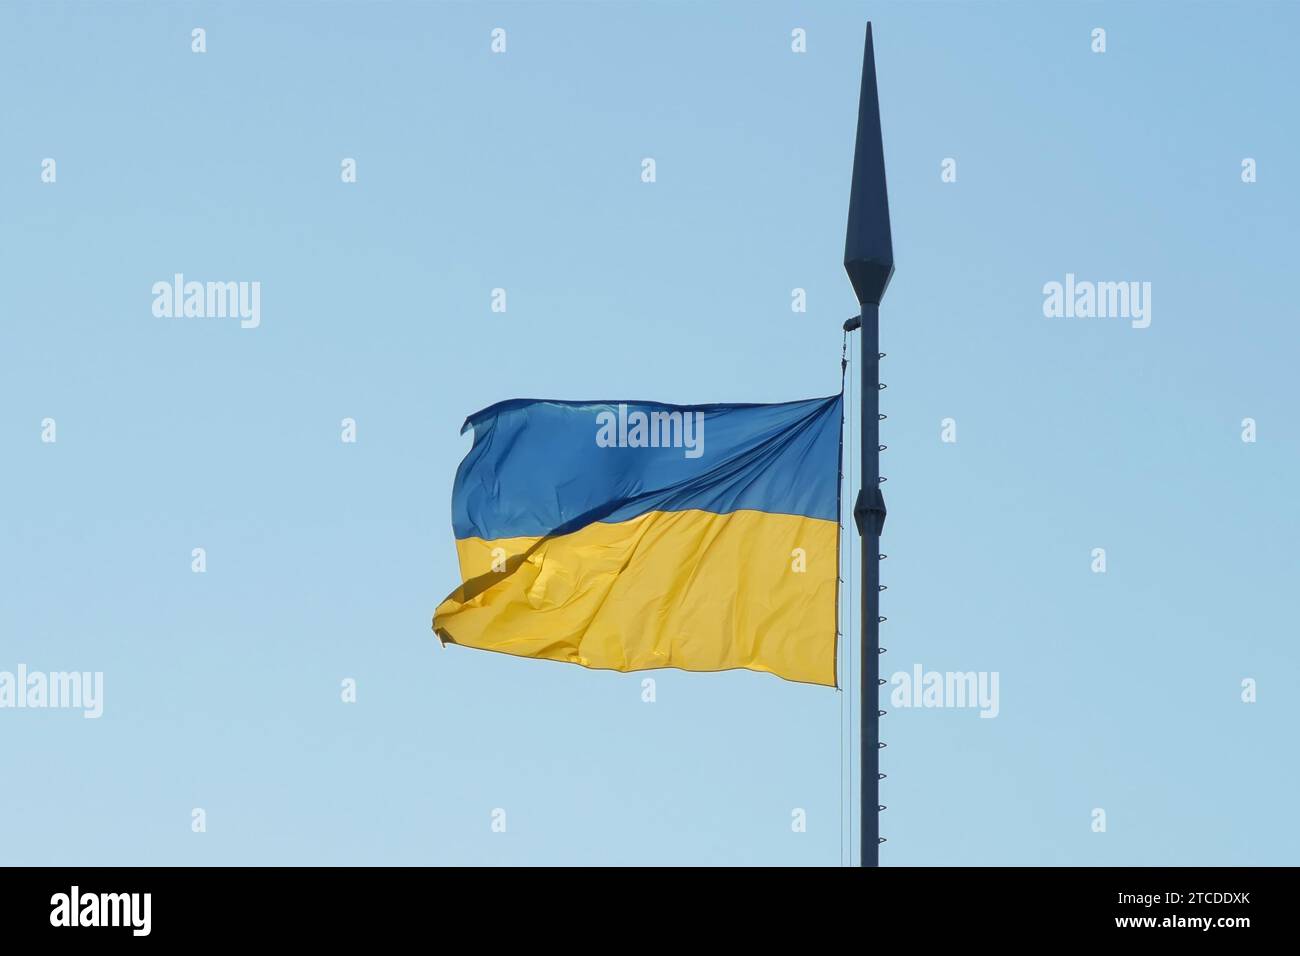 Die Nationalflagge der Ukraine flattert im Wind auf einem hohen Fahnenmast im Sonnenlicht Stockfoto